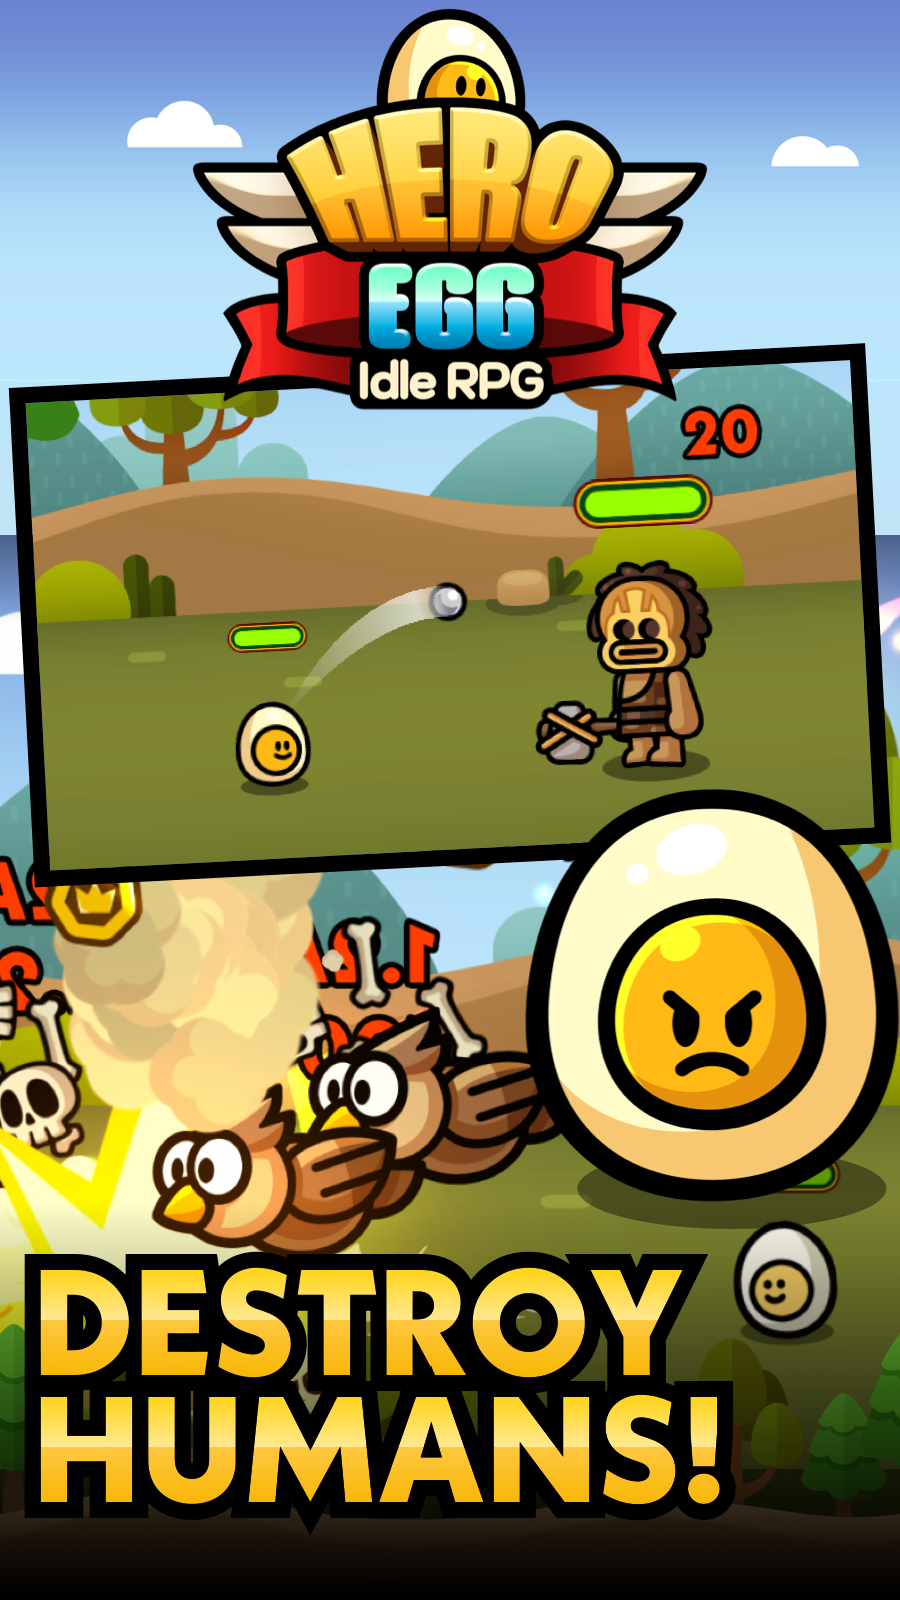 Screenshot 1 of Huevo de héroe: juego de rol inactivo 1.0.0